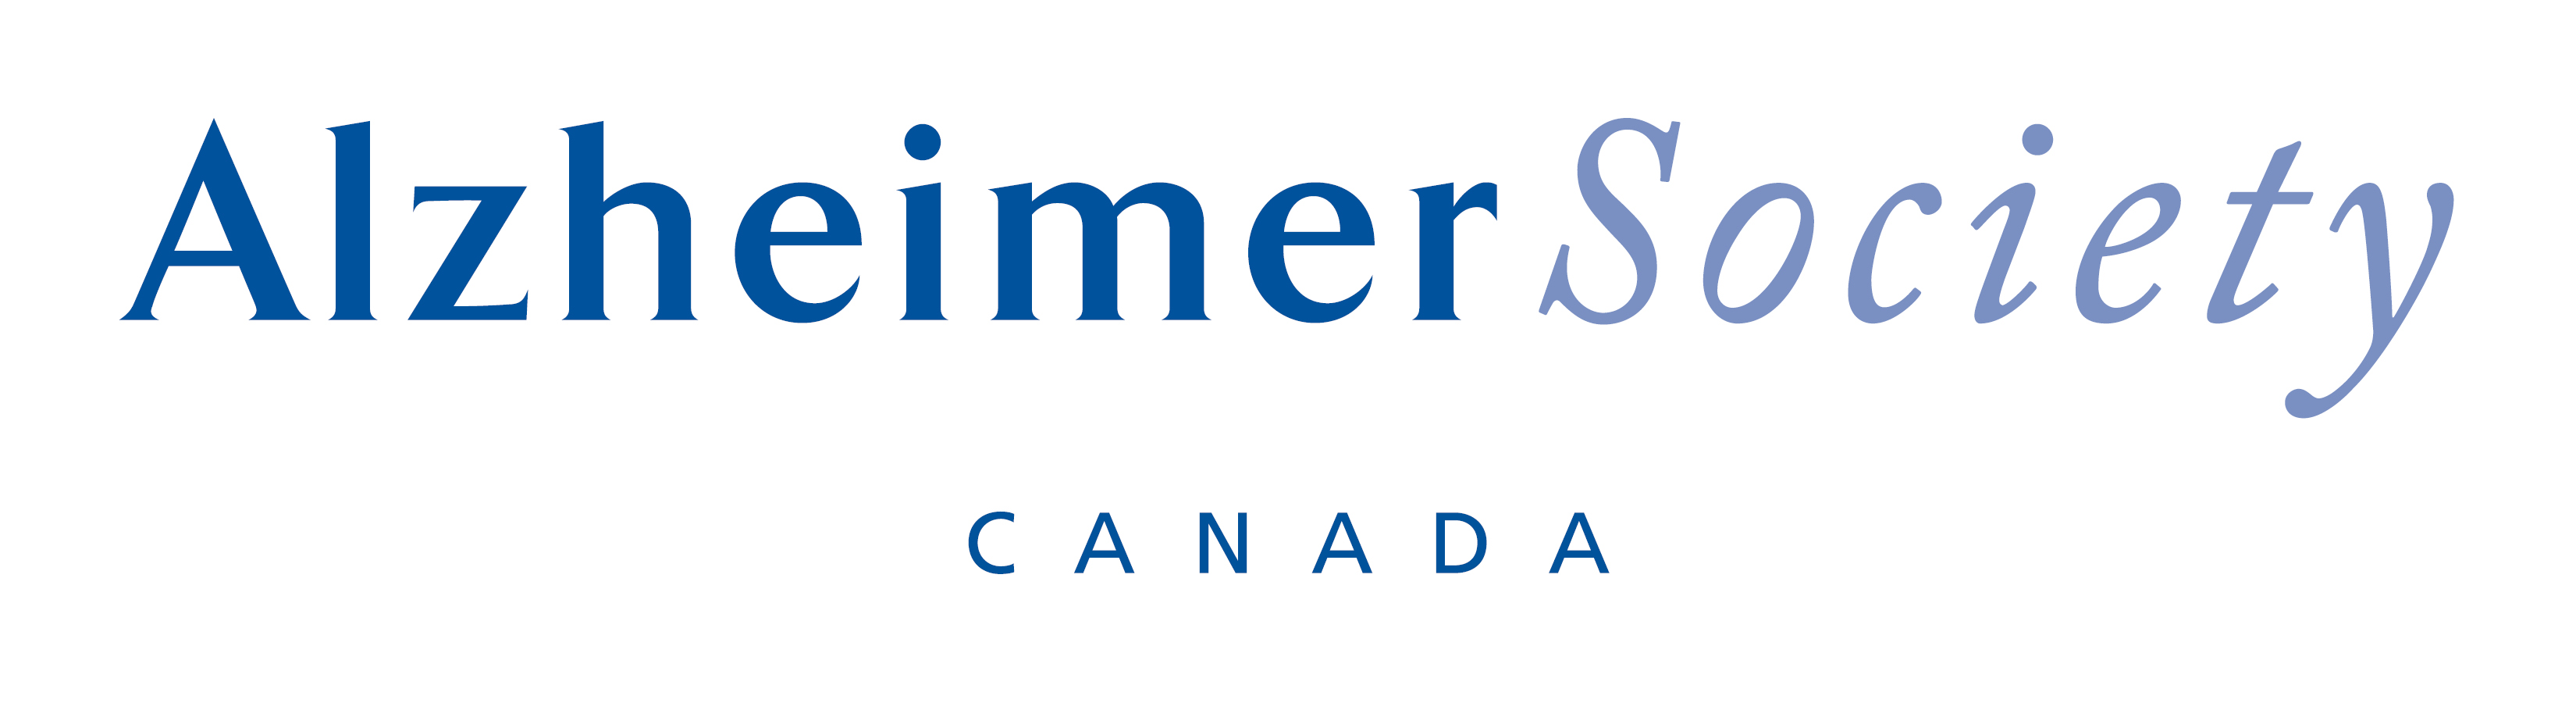 Alzheimer Society of Canada